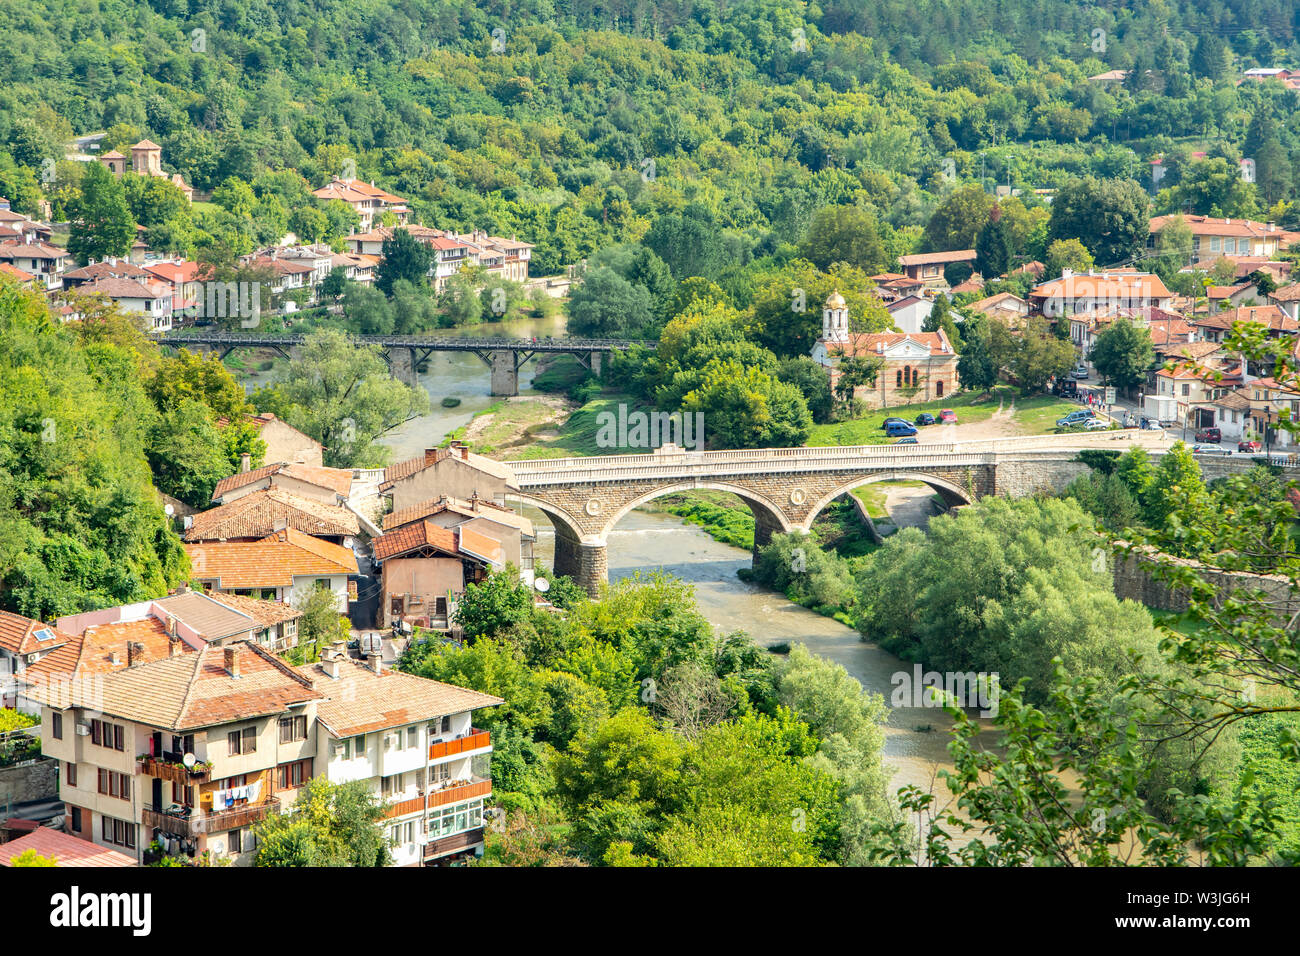 Vladishki Bridge, Veliko Tarnovo, Bulgarie Banque D'Images